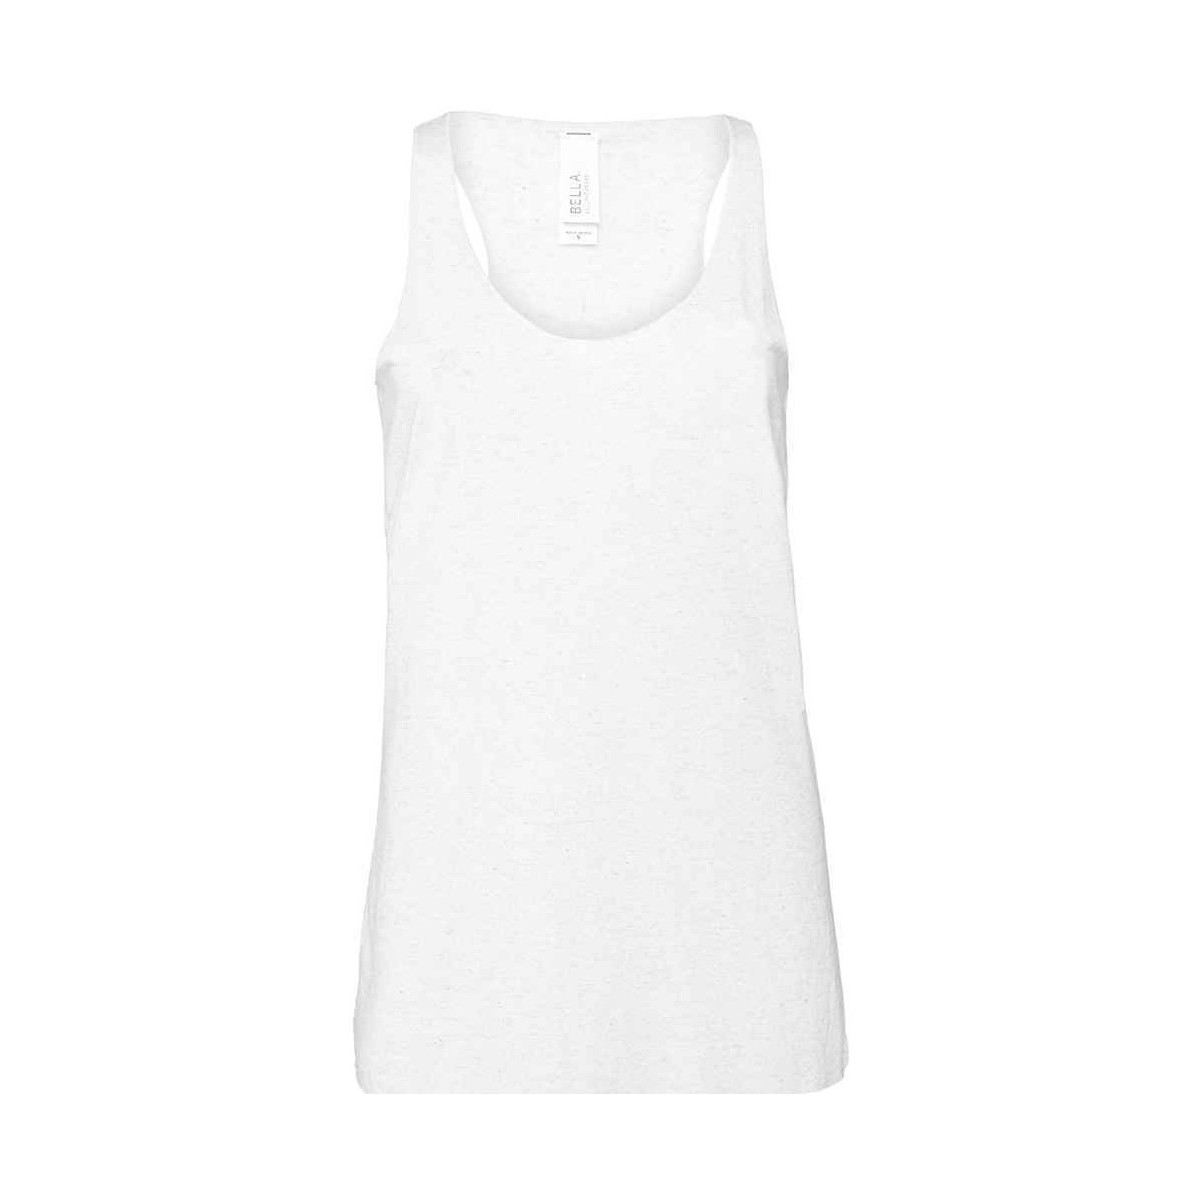 Vêtements Femme Débardeurs / T-shirts sans manche Bella + Canvas BL6003 Blanc